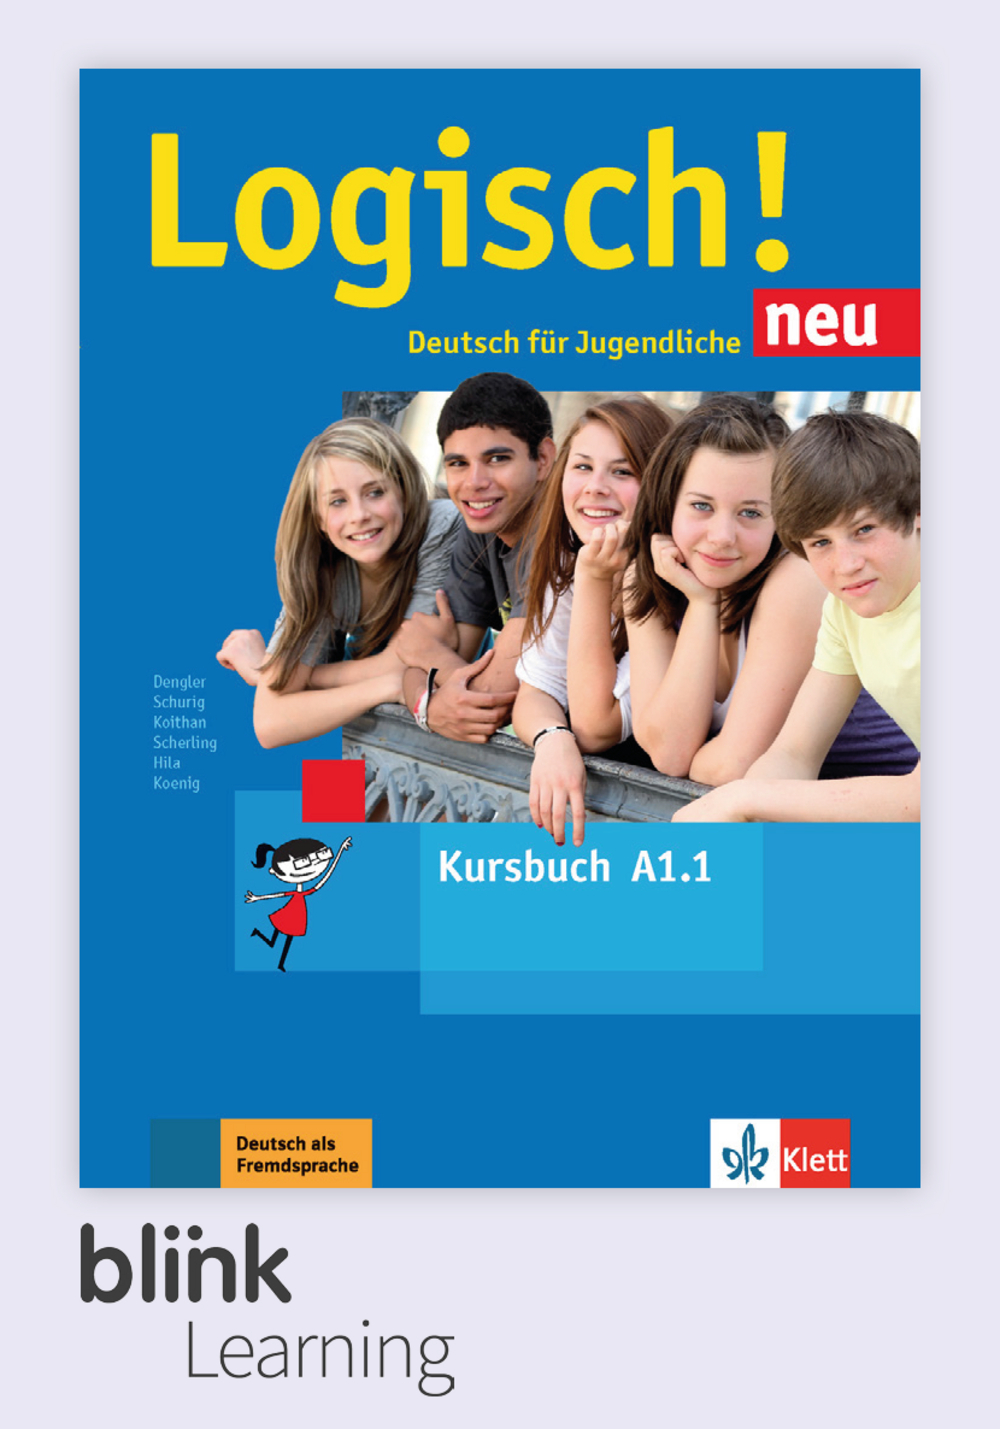 Logisch! NEU A1.1 Digital Kursbuch für Unterrichtende / Цифровой учебник для учителя